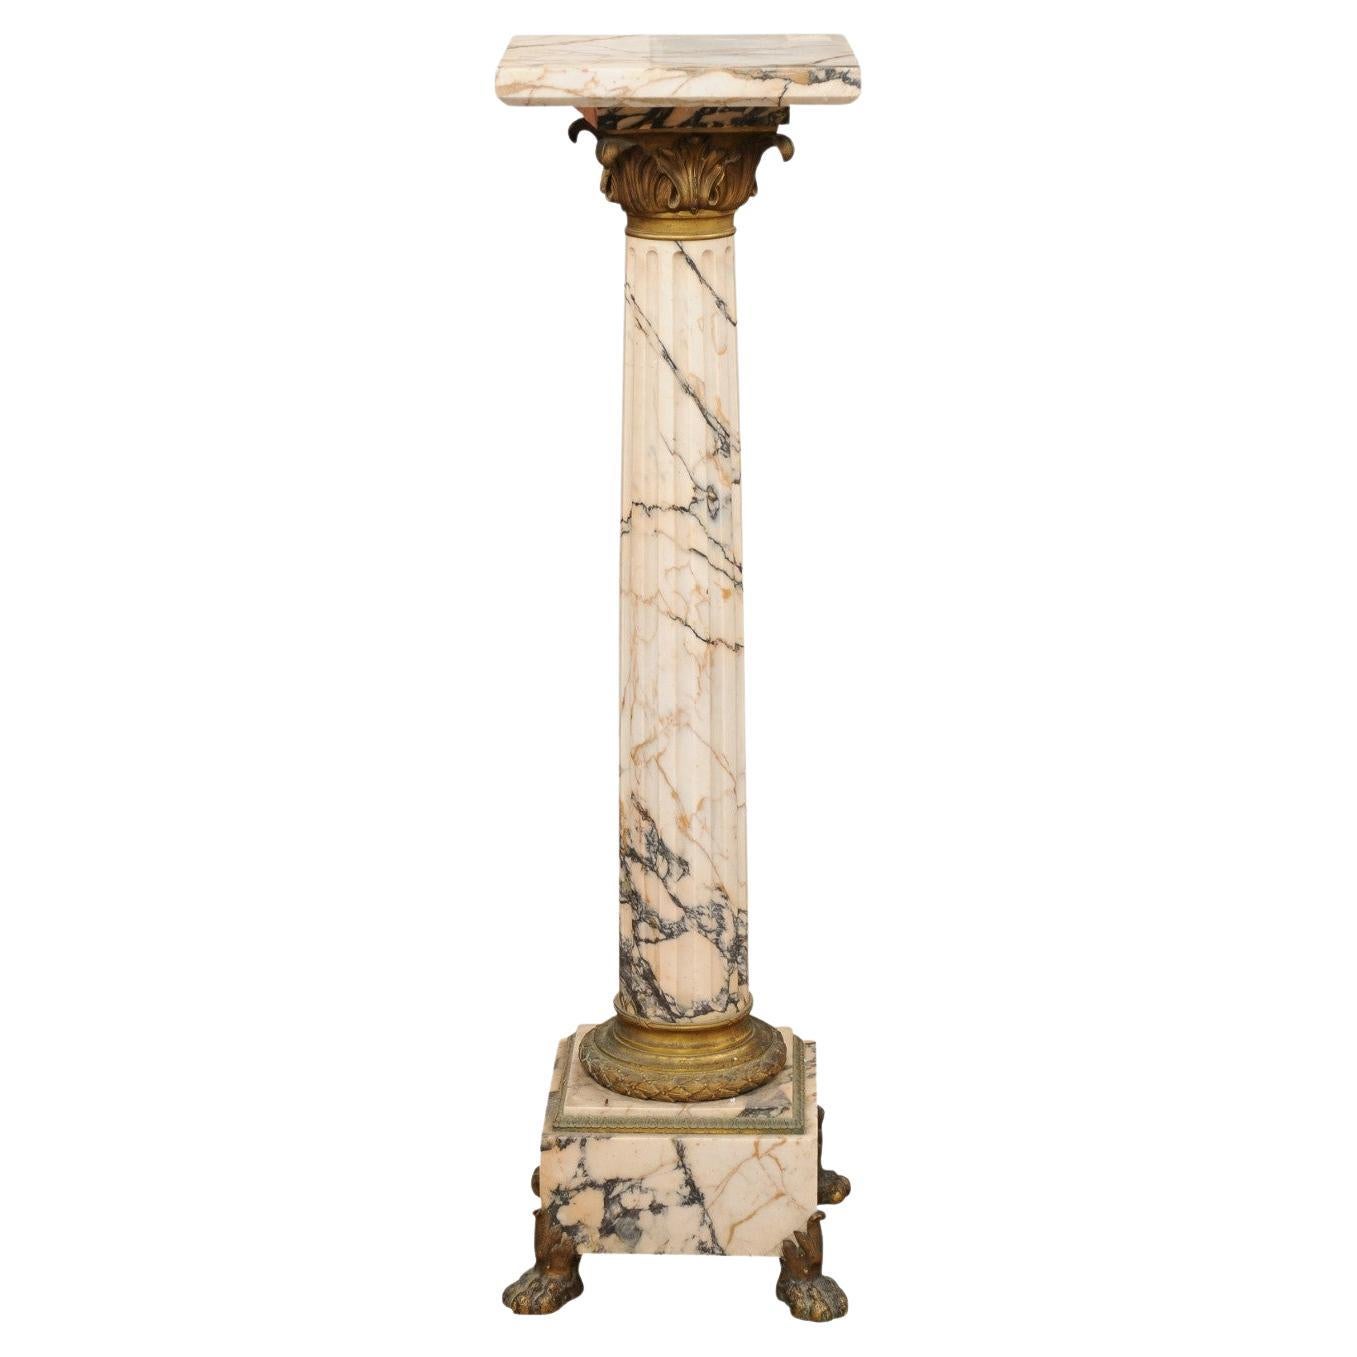 Début du 19e siècle, The Pedestal en marbre Empire italien avec détails en bronze doré